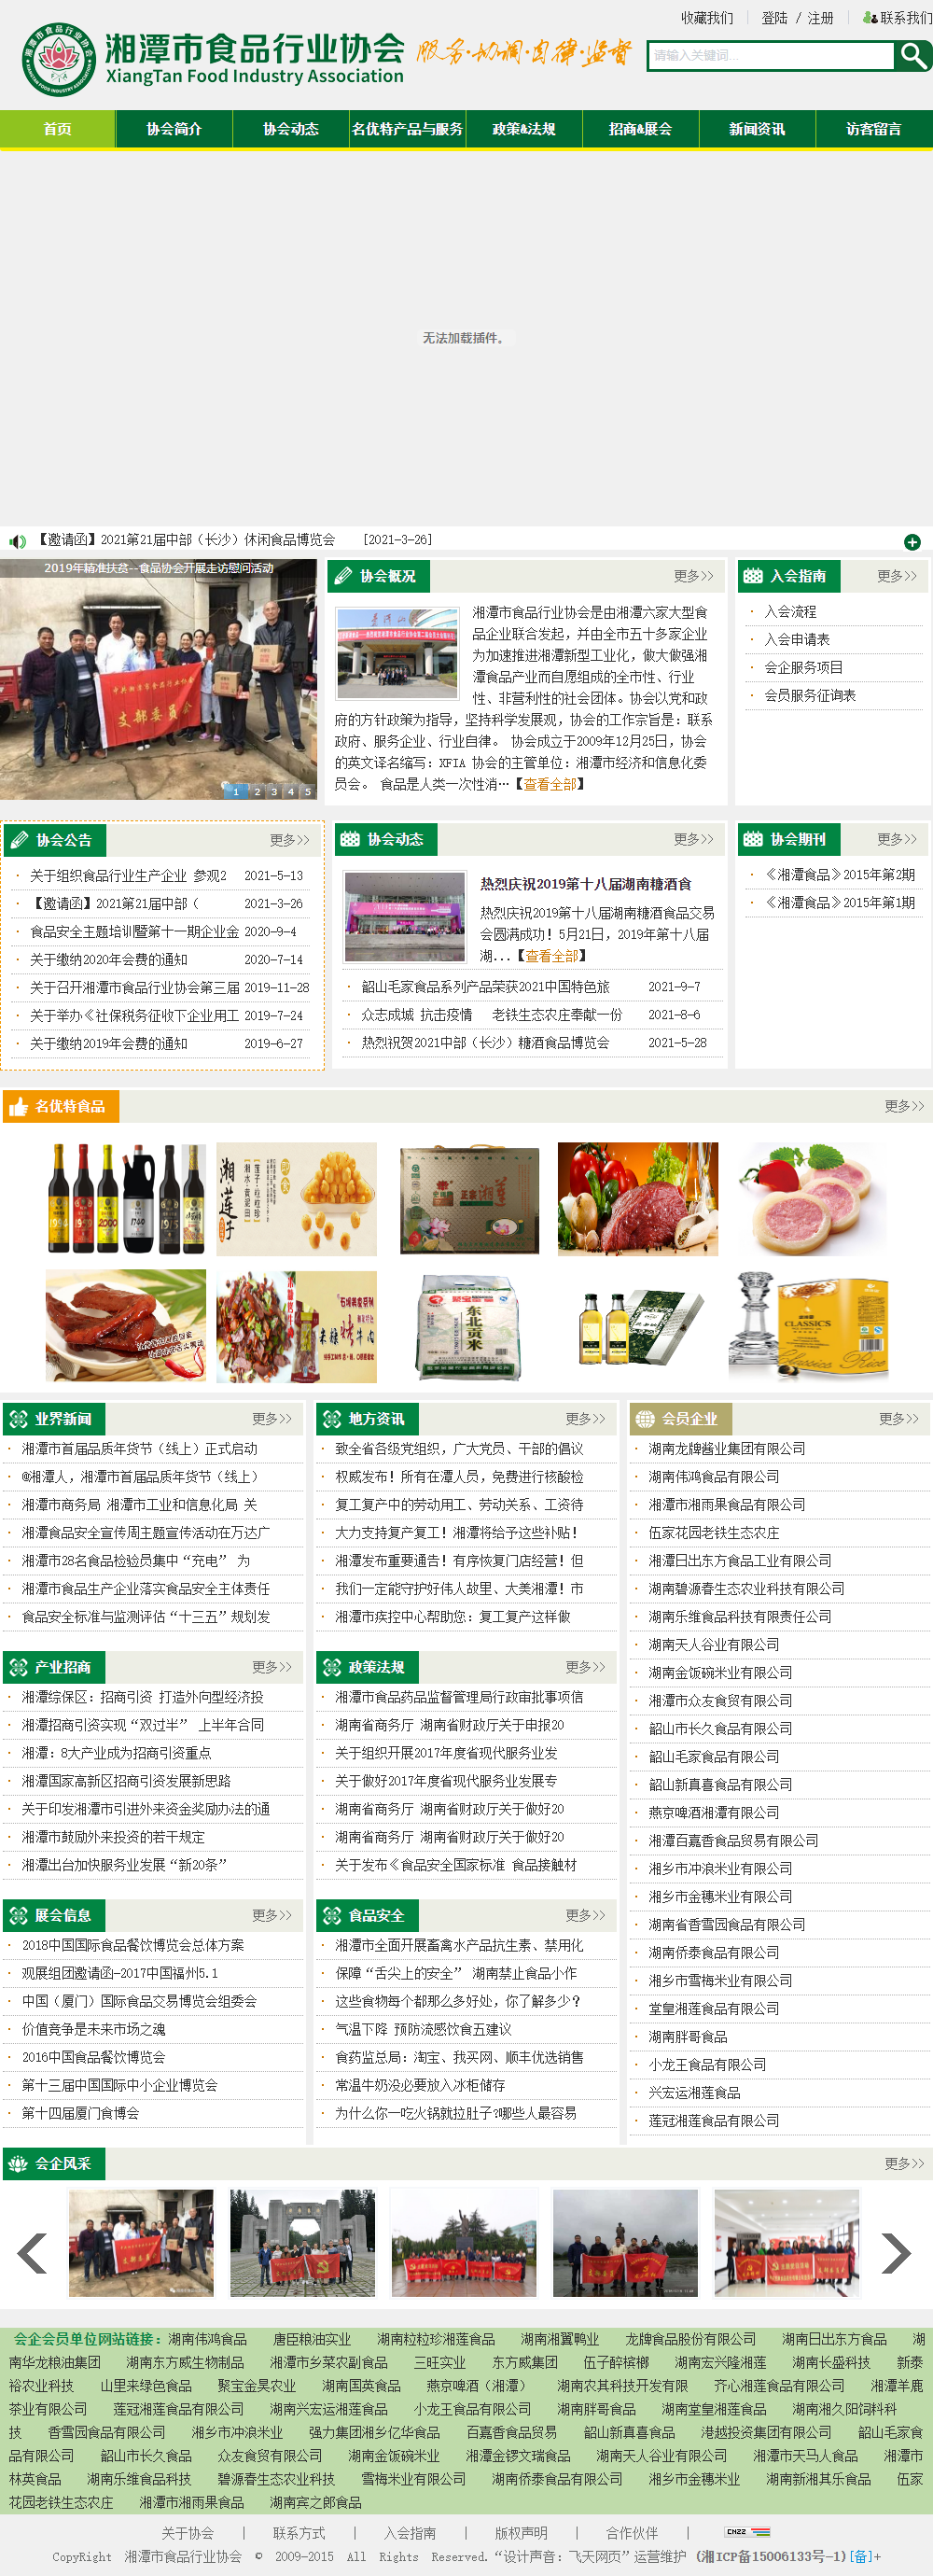 湘潭市食品行业协会网站案例